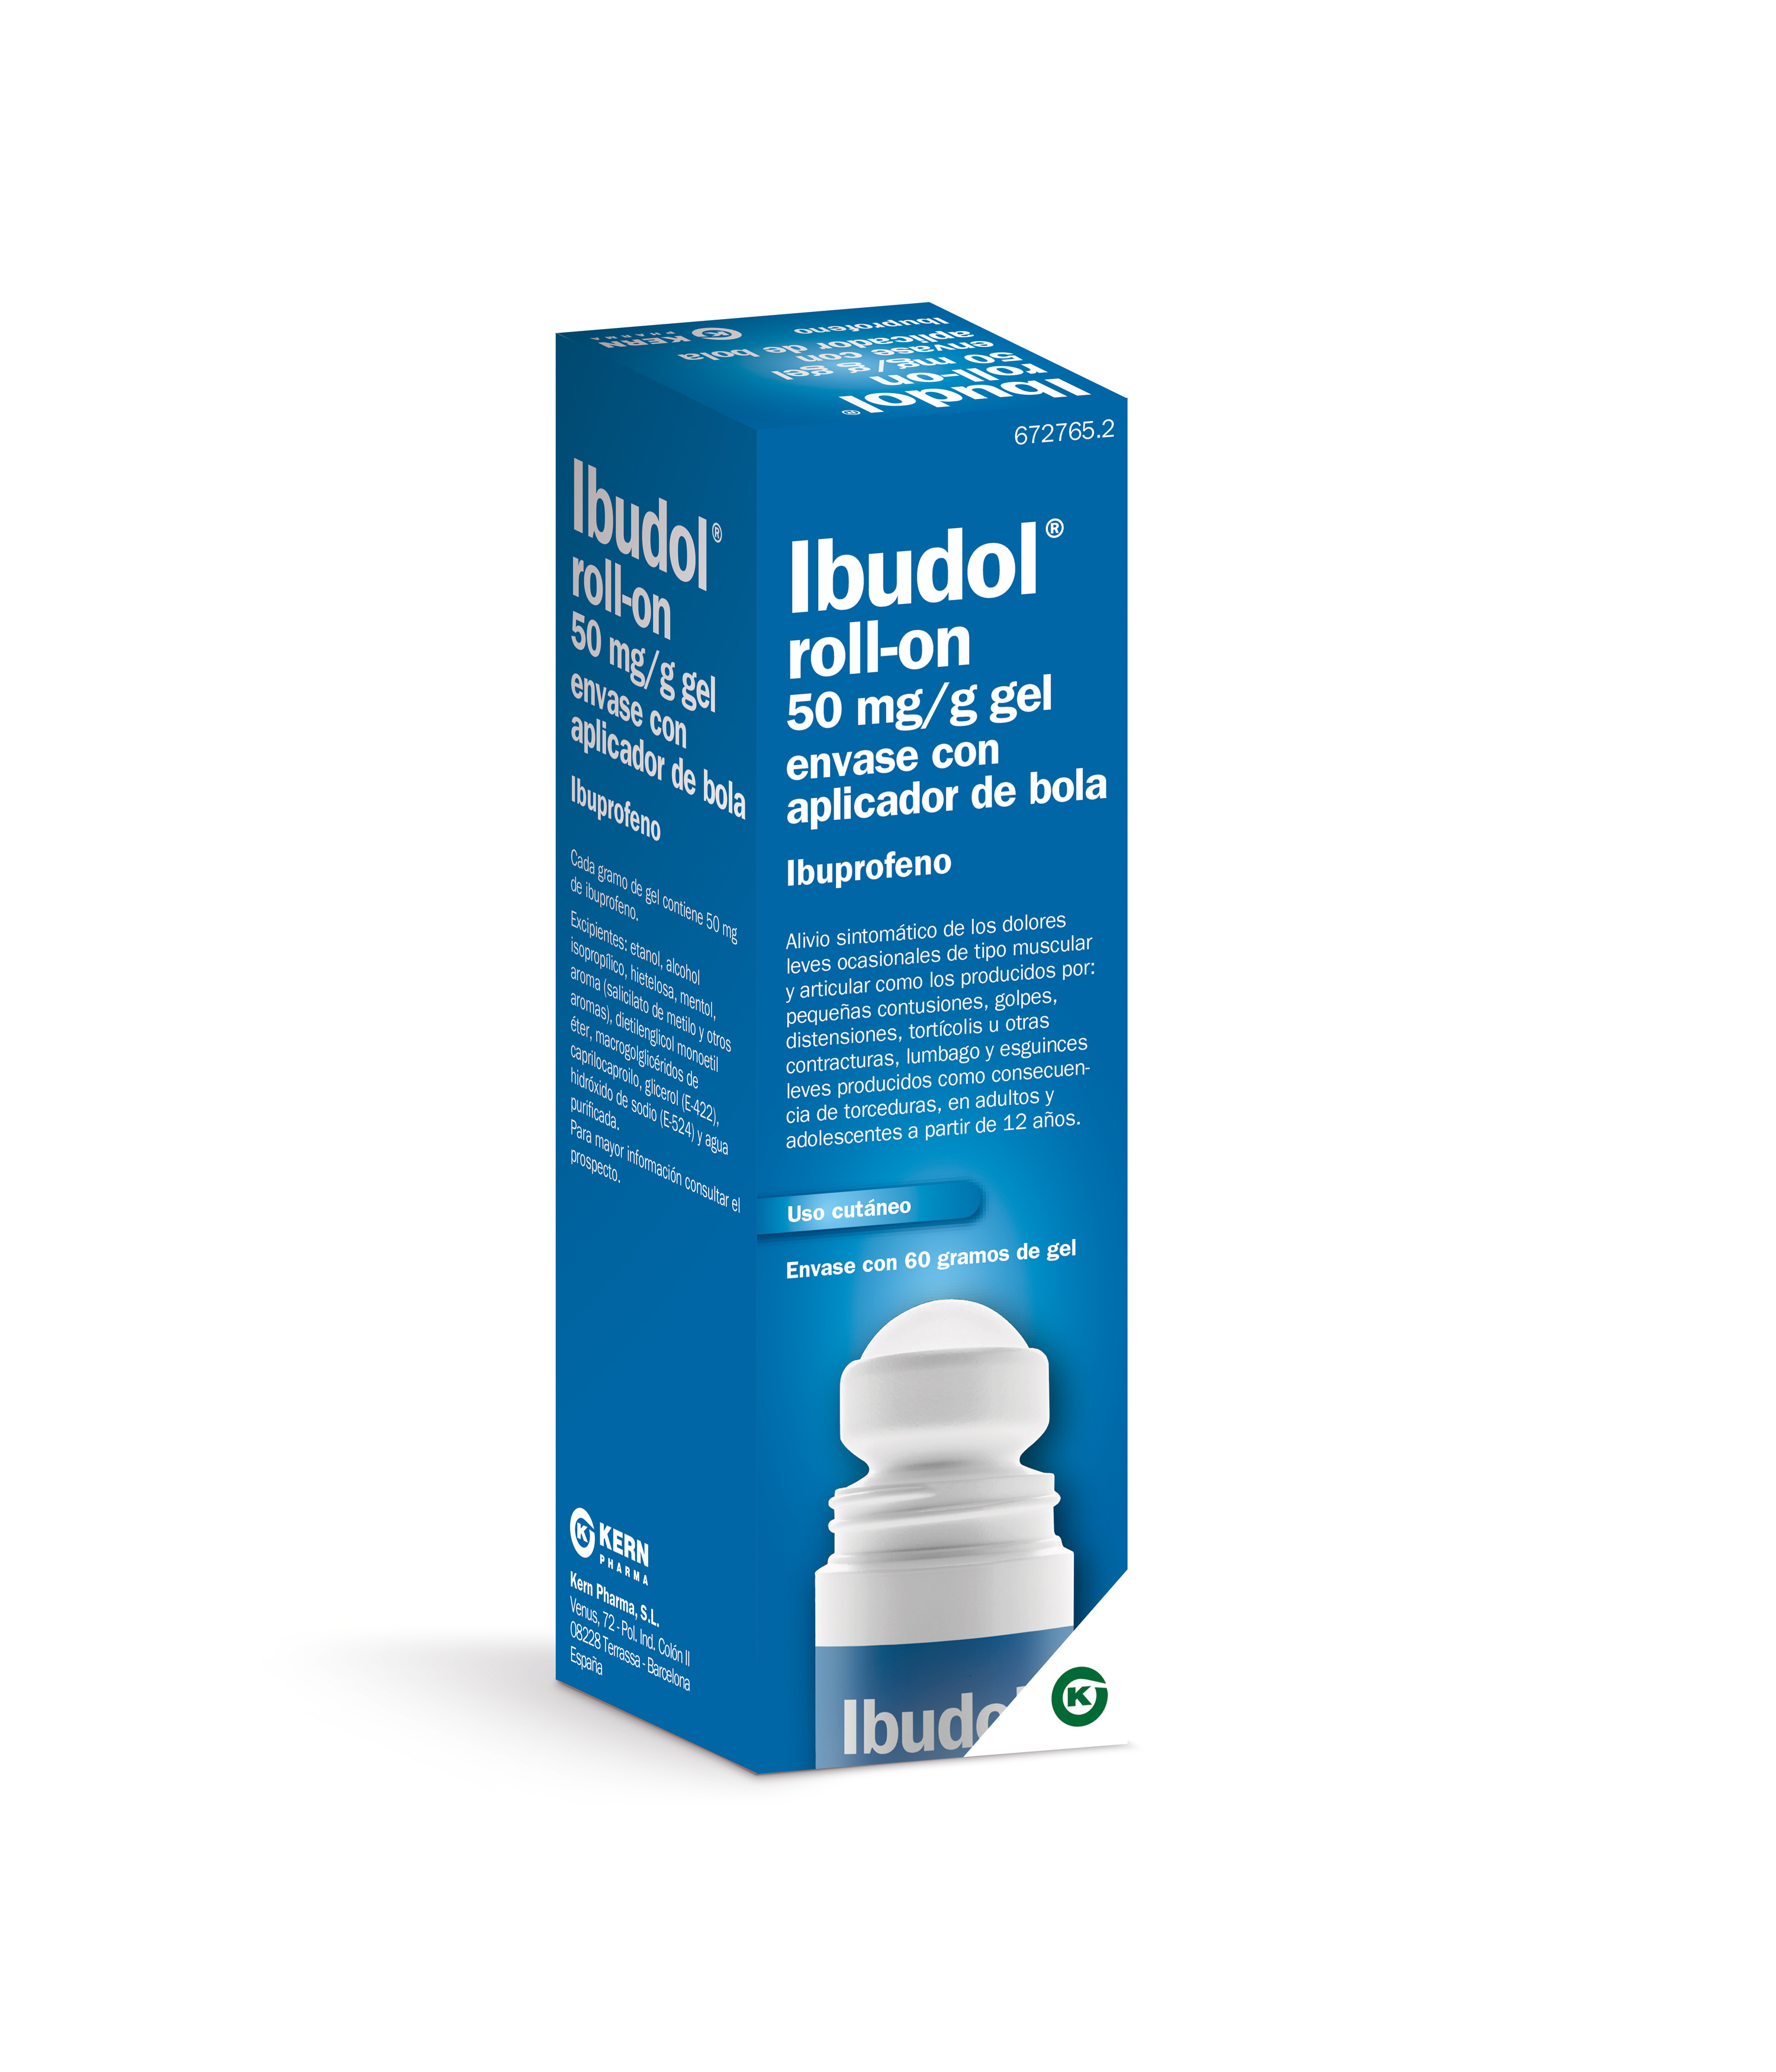 IBUDOL ROLL-ON 50 mg/g gel envase con aplicador de bola